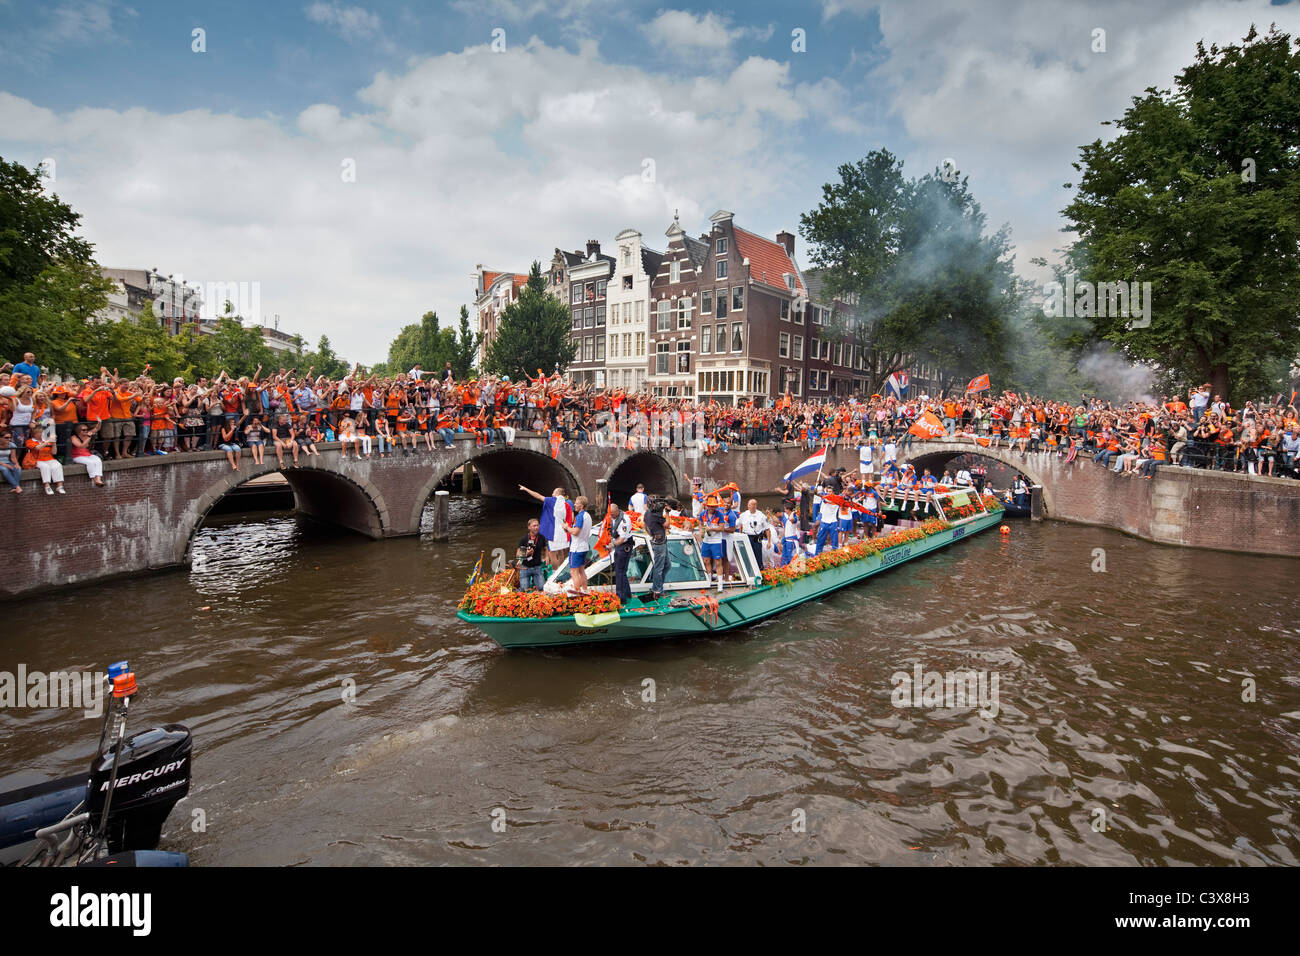 Einweihung Kanal-Parade der niederländischen Nationalmannschaft. Anhänger, vor allem in den nationalen Farben gekleidet: Orange. Stockfoto